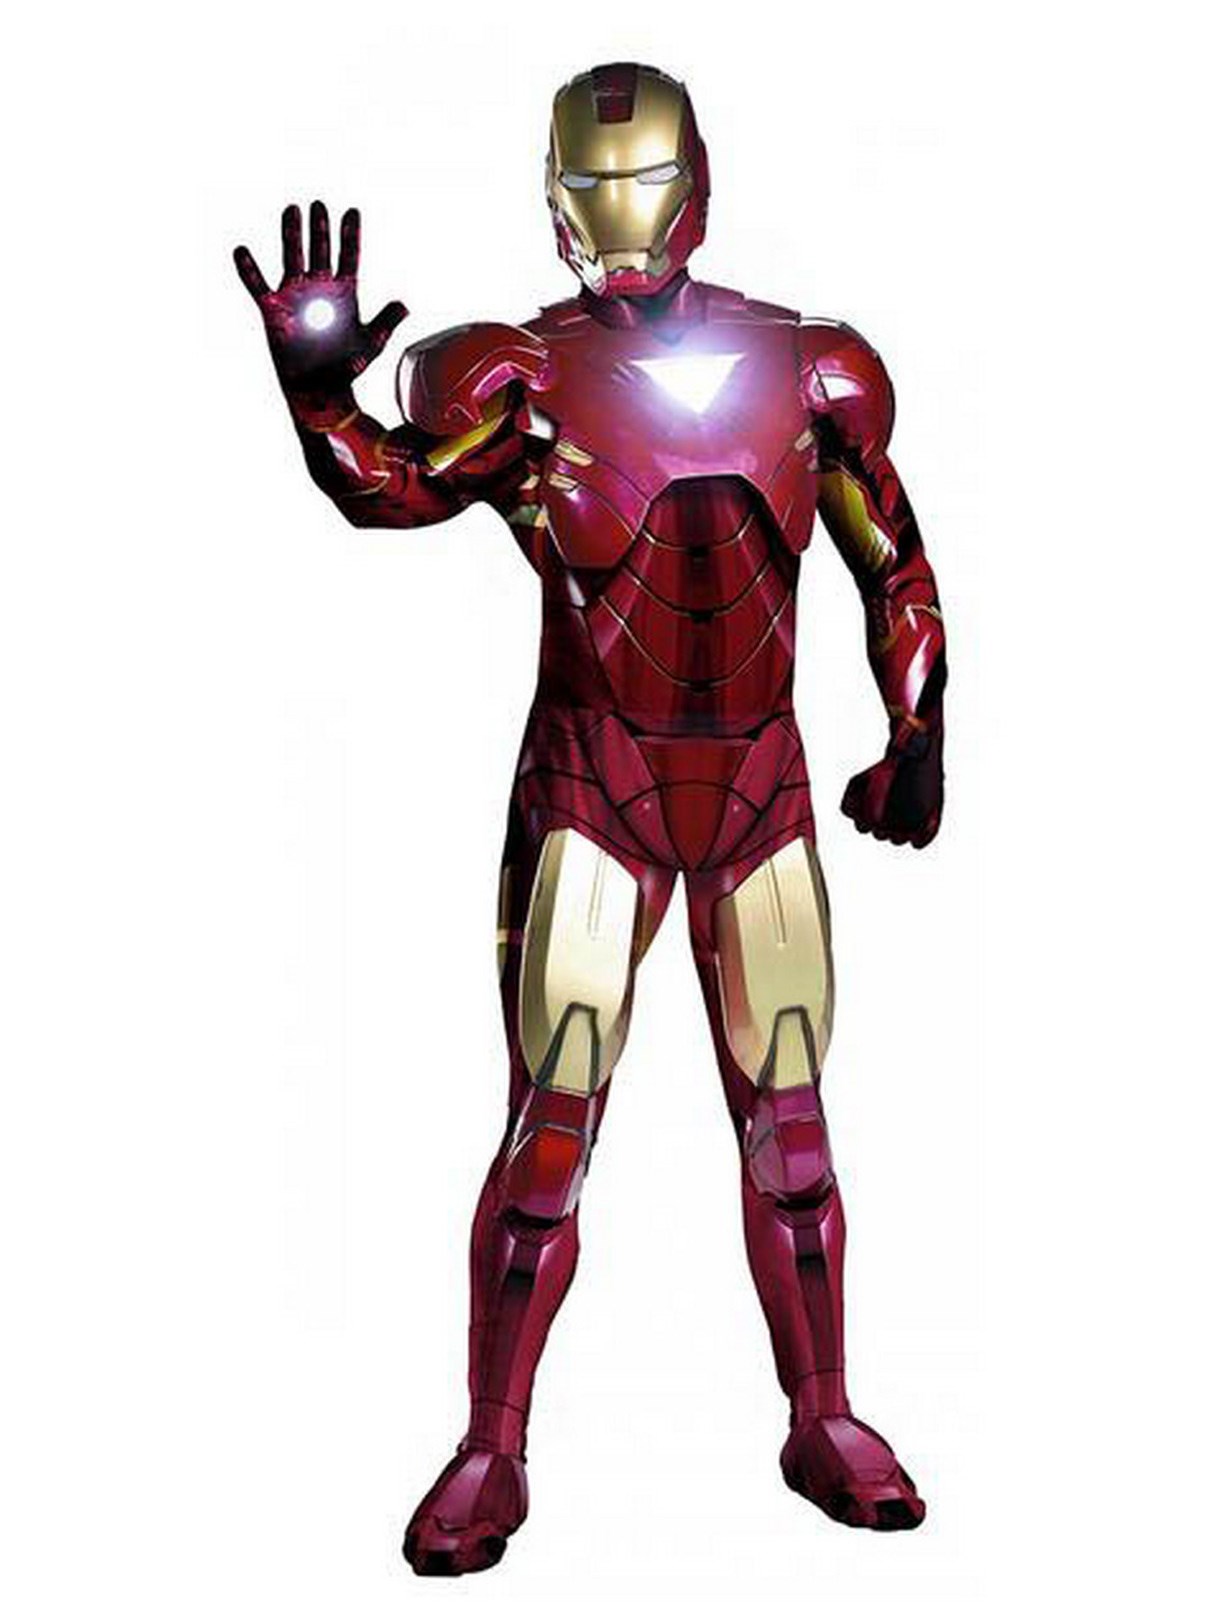 Iron Man 2 - Iron Man Mark 6 Super Deluxe Adult Costume